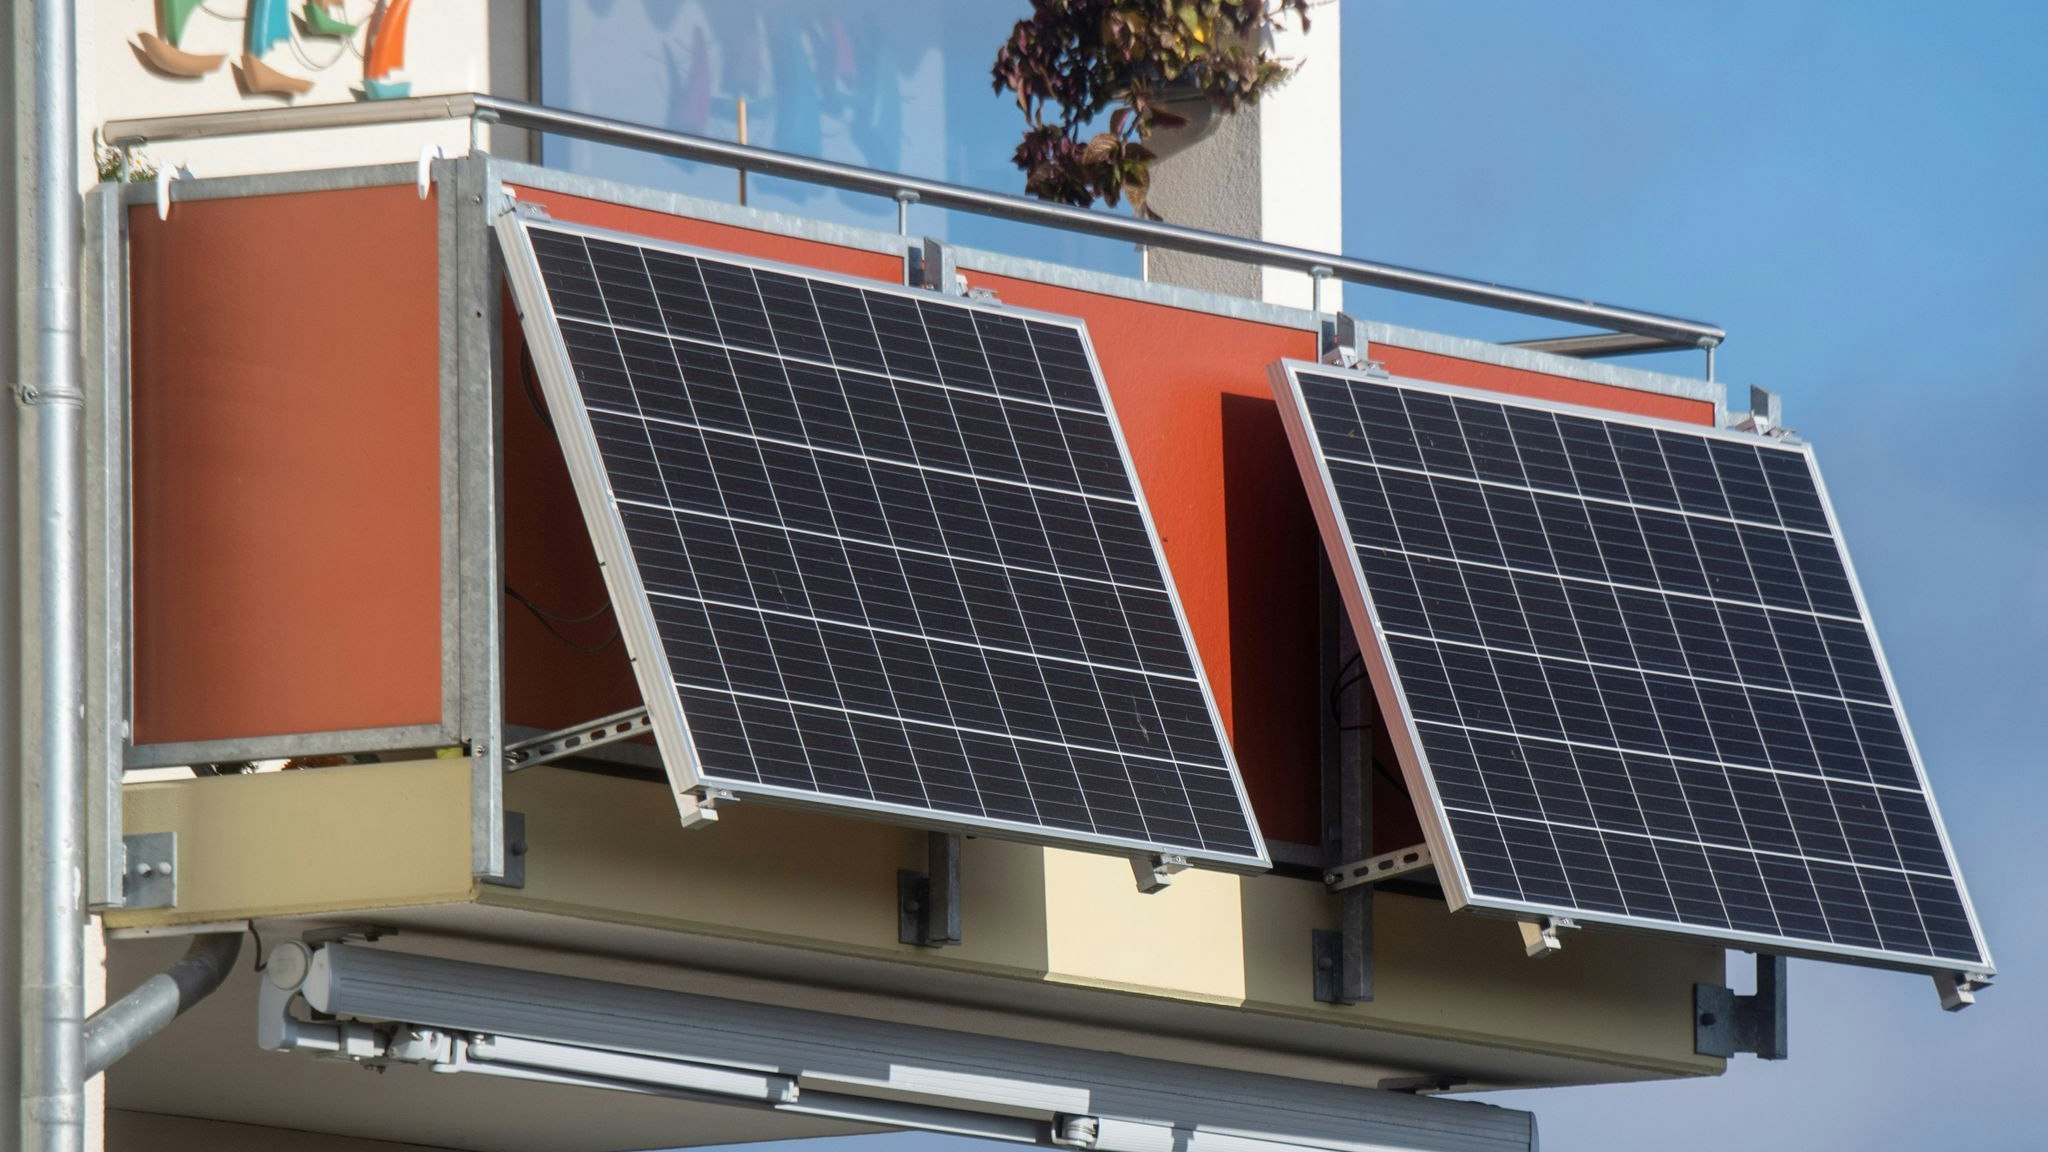 Solarmodule für ein sogenanntes Balkonkraftwerk hängen an einem Balkon. Foto: dpa/Sauer